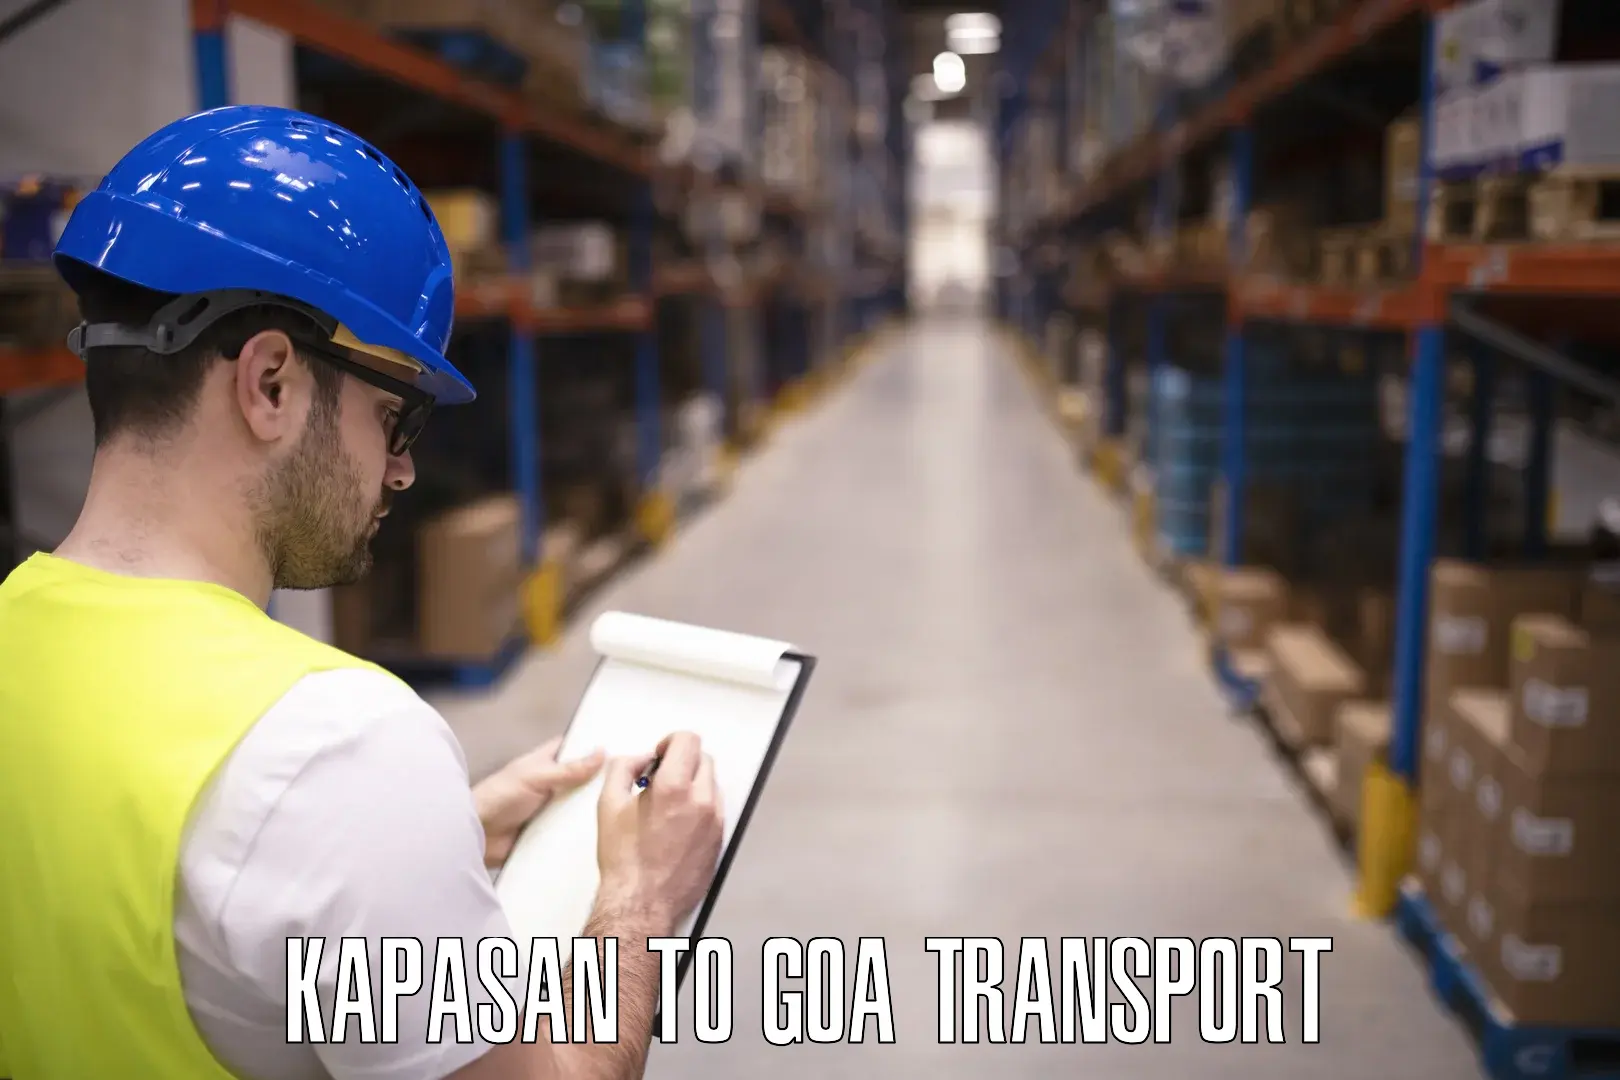 Transport services Kapasan to Goa